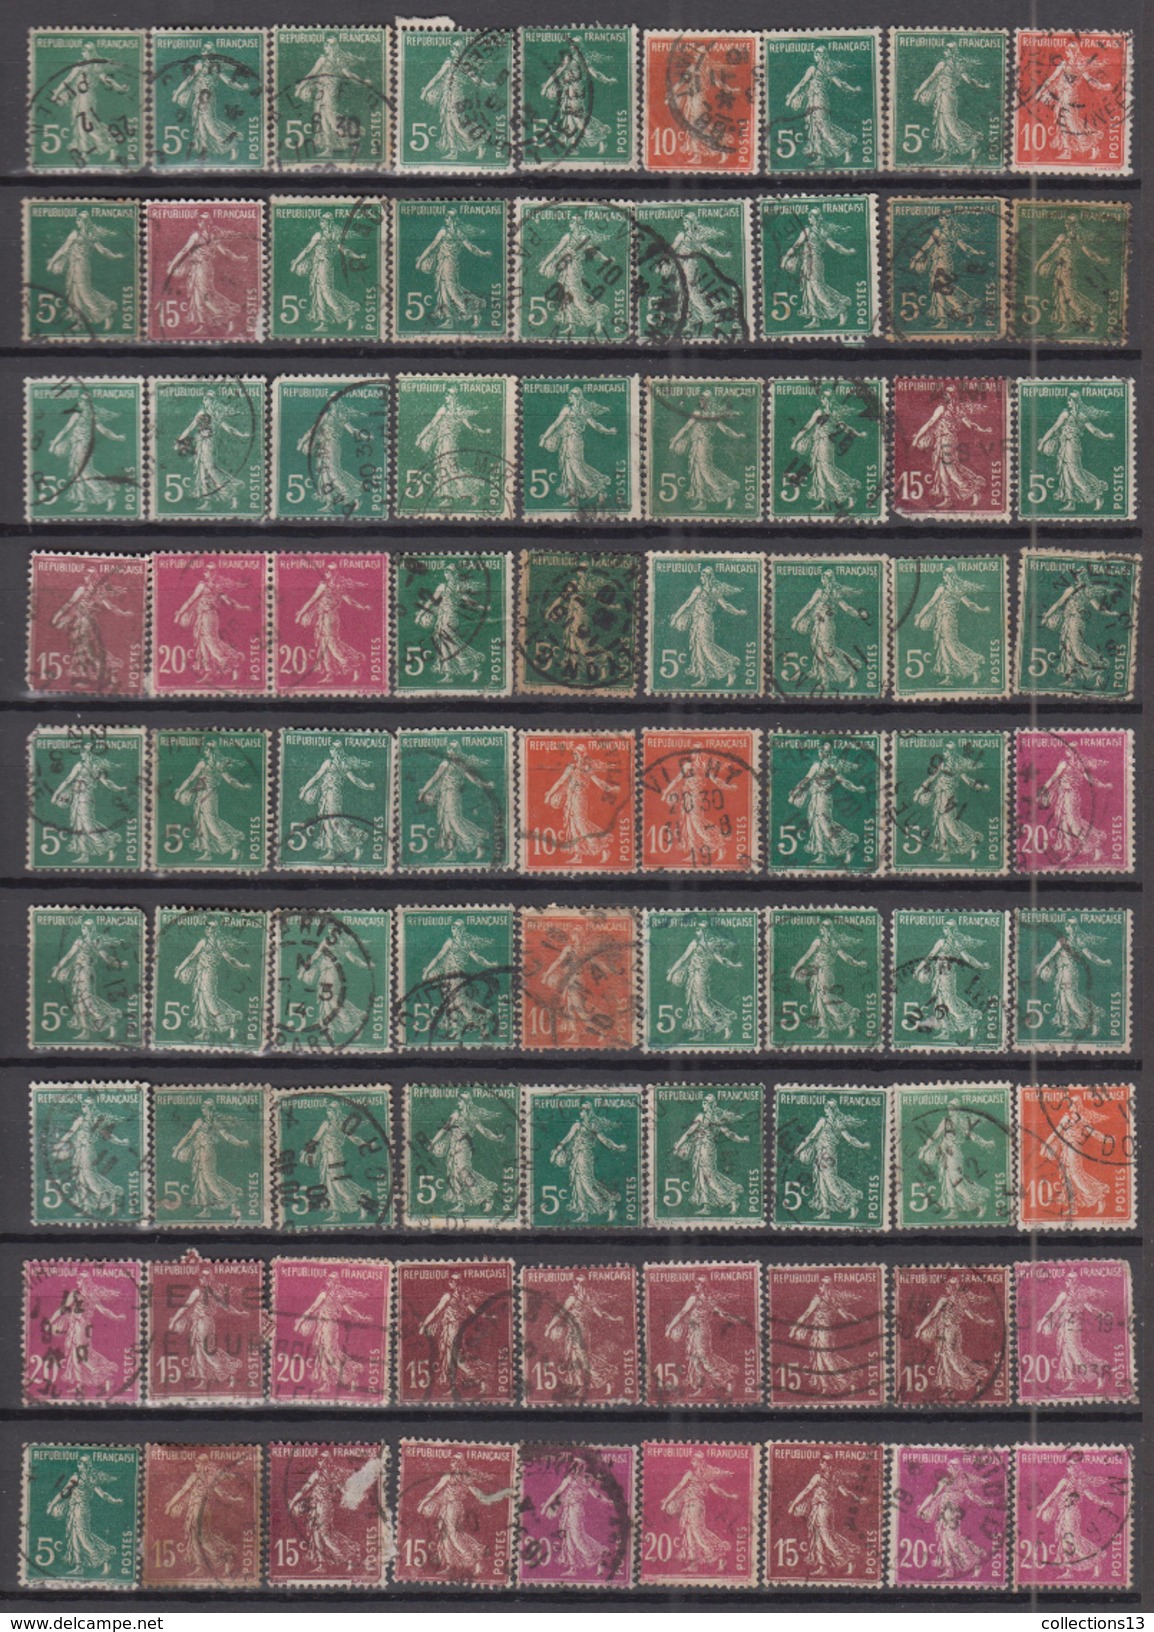 FRANCE - lot de 4000 timbres (type semeuse camée) depart a 1 ct le timbre